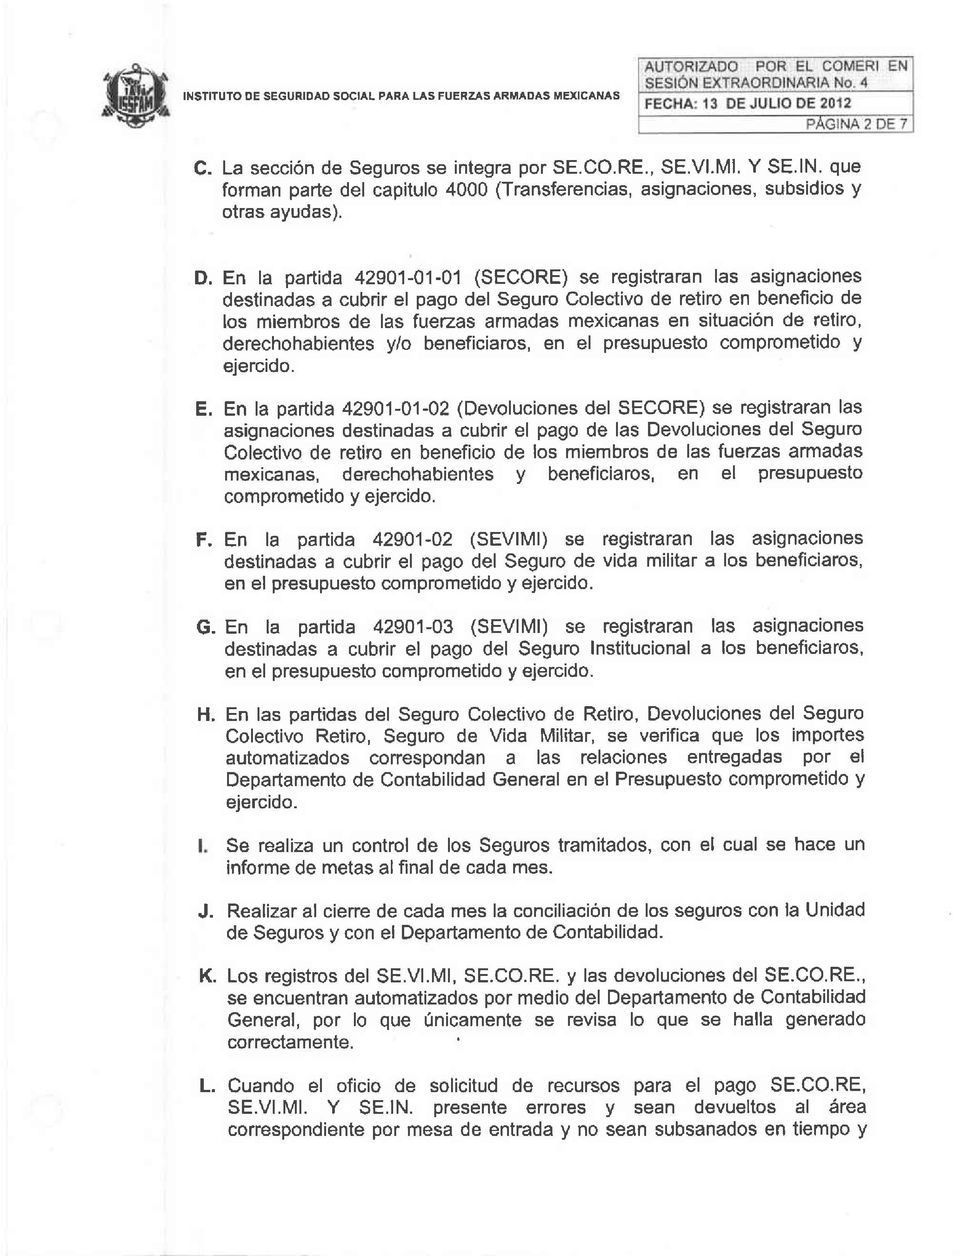 En la partida 42901-01-01 (SECORE) se registraran las asignaciones destinadas a cubrir el pago del Seguro Colectivo de retiro en beneficio de los miembros de las fuerzas armadas mexicanas en